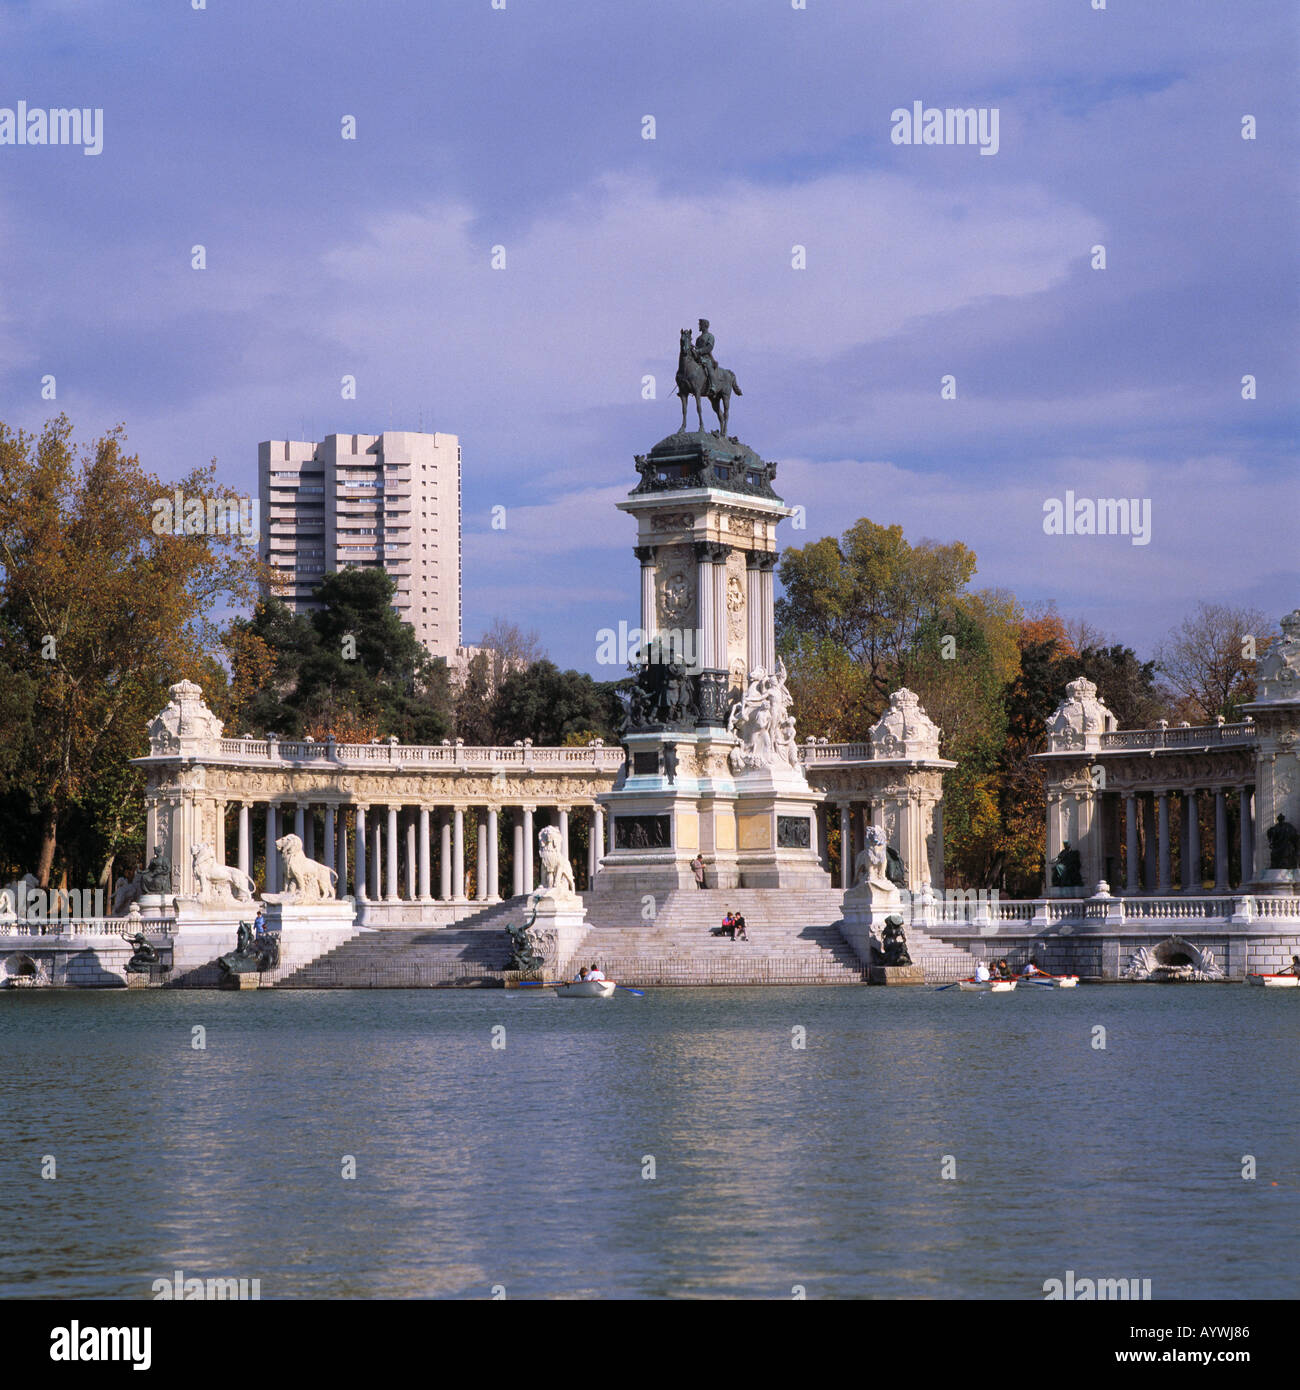 Parque del Retiro, Retiro-Park, Denkmal Koenig Alfons XII, Teich mit Ruderbooten, Hochhaus, herbstlich, Madrid Stock Photo